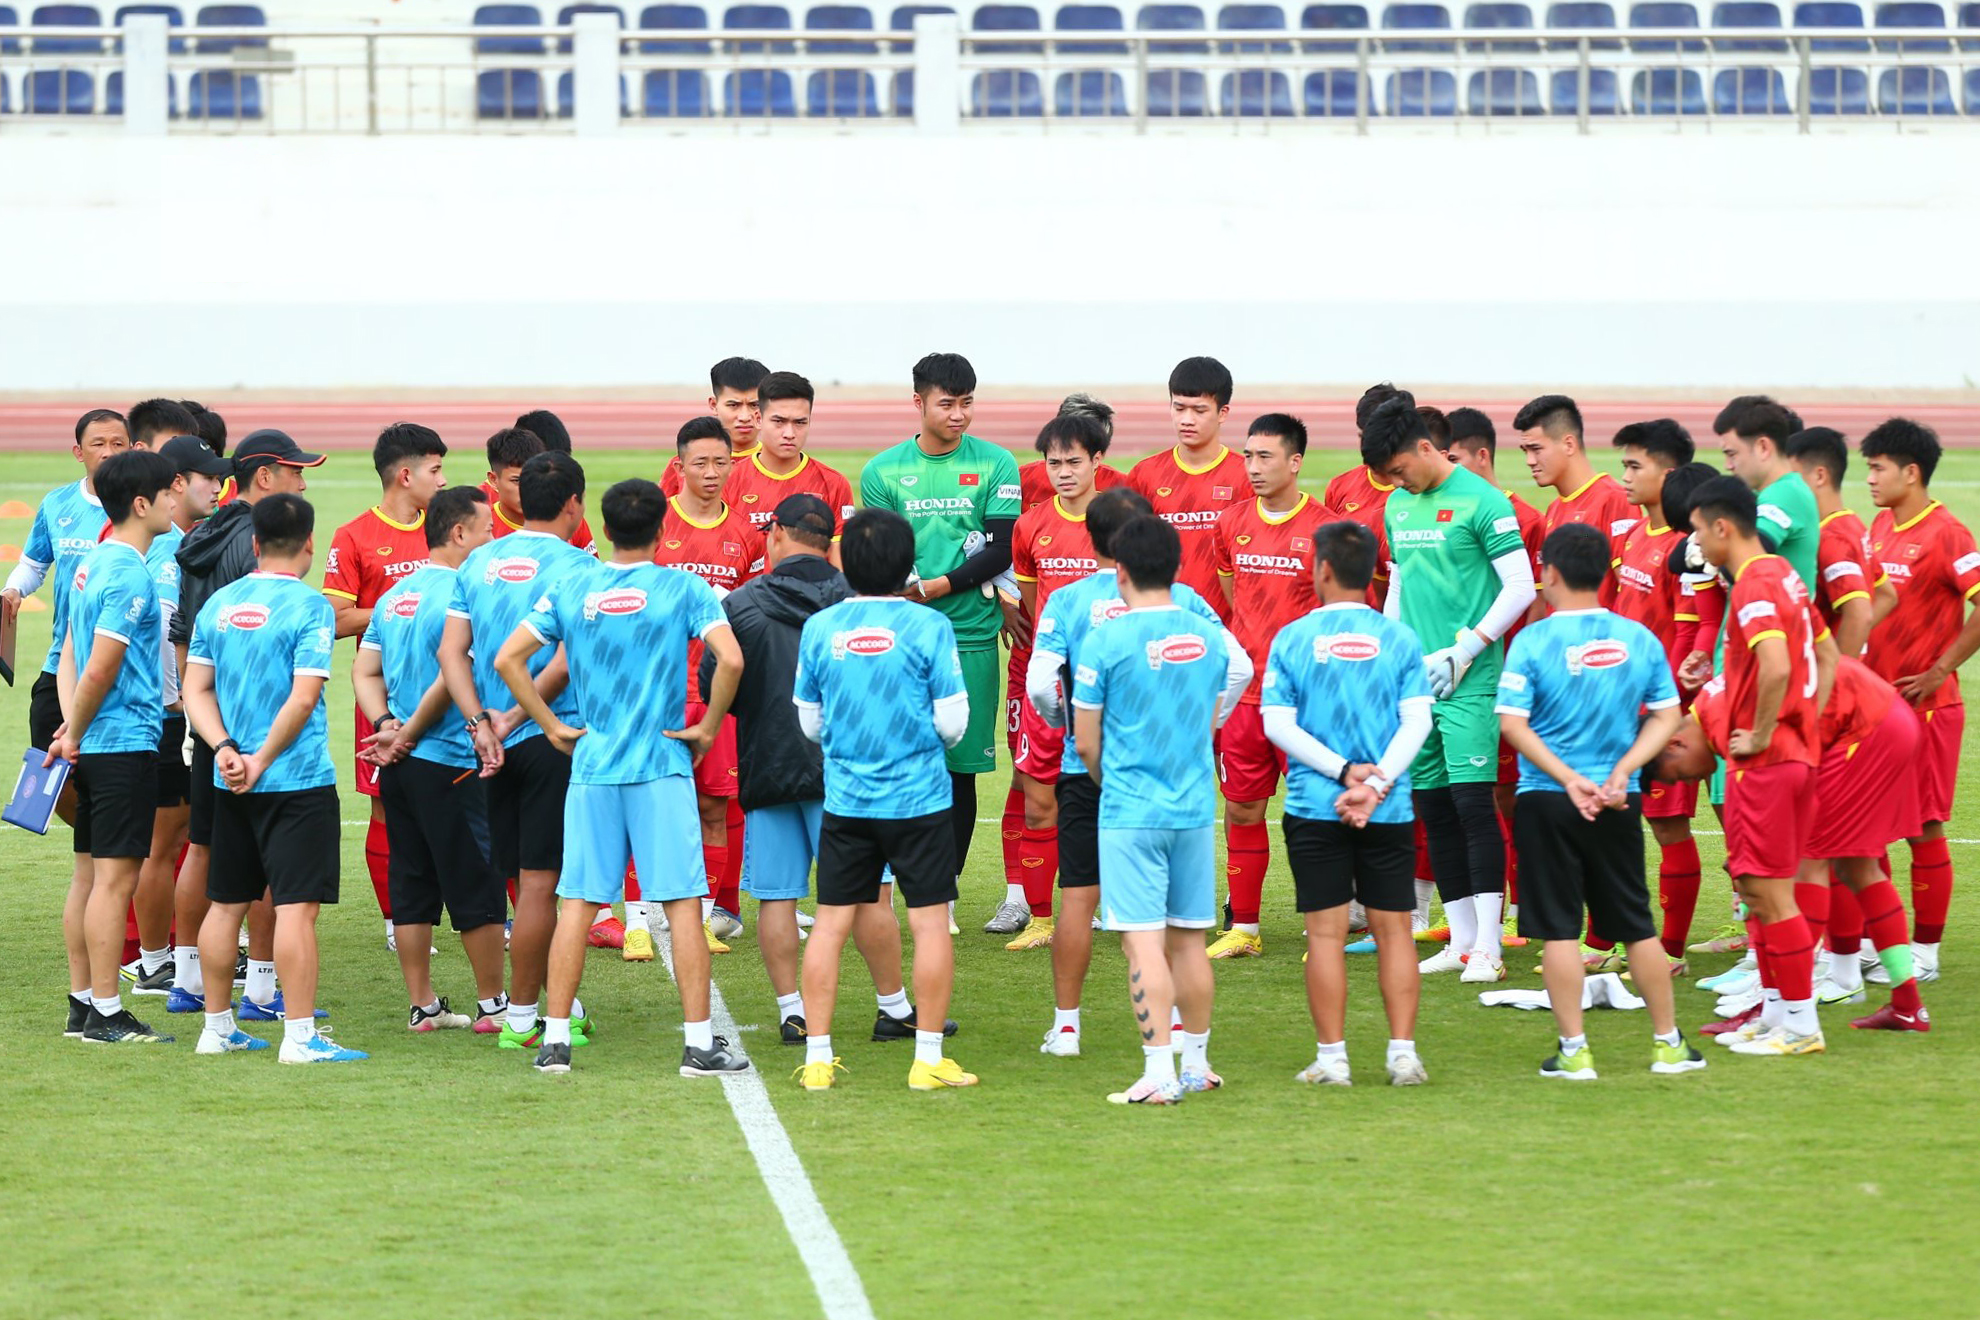 Hoàng Đức chấn thương, Văn Đức và Tấn Tài ghi bàn trong trận đấu nội bộ của ĐT Việt Nam - Ảnh 8.